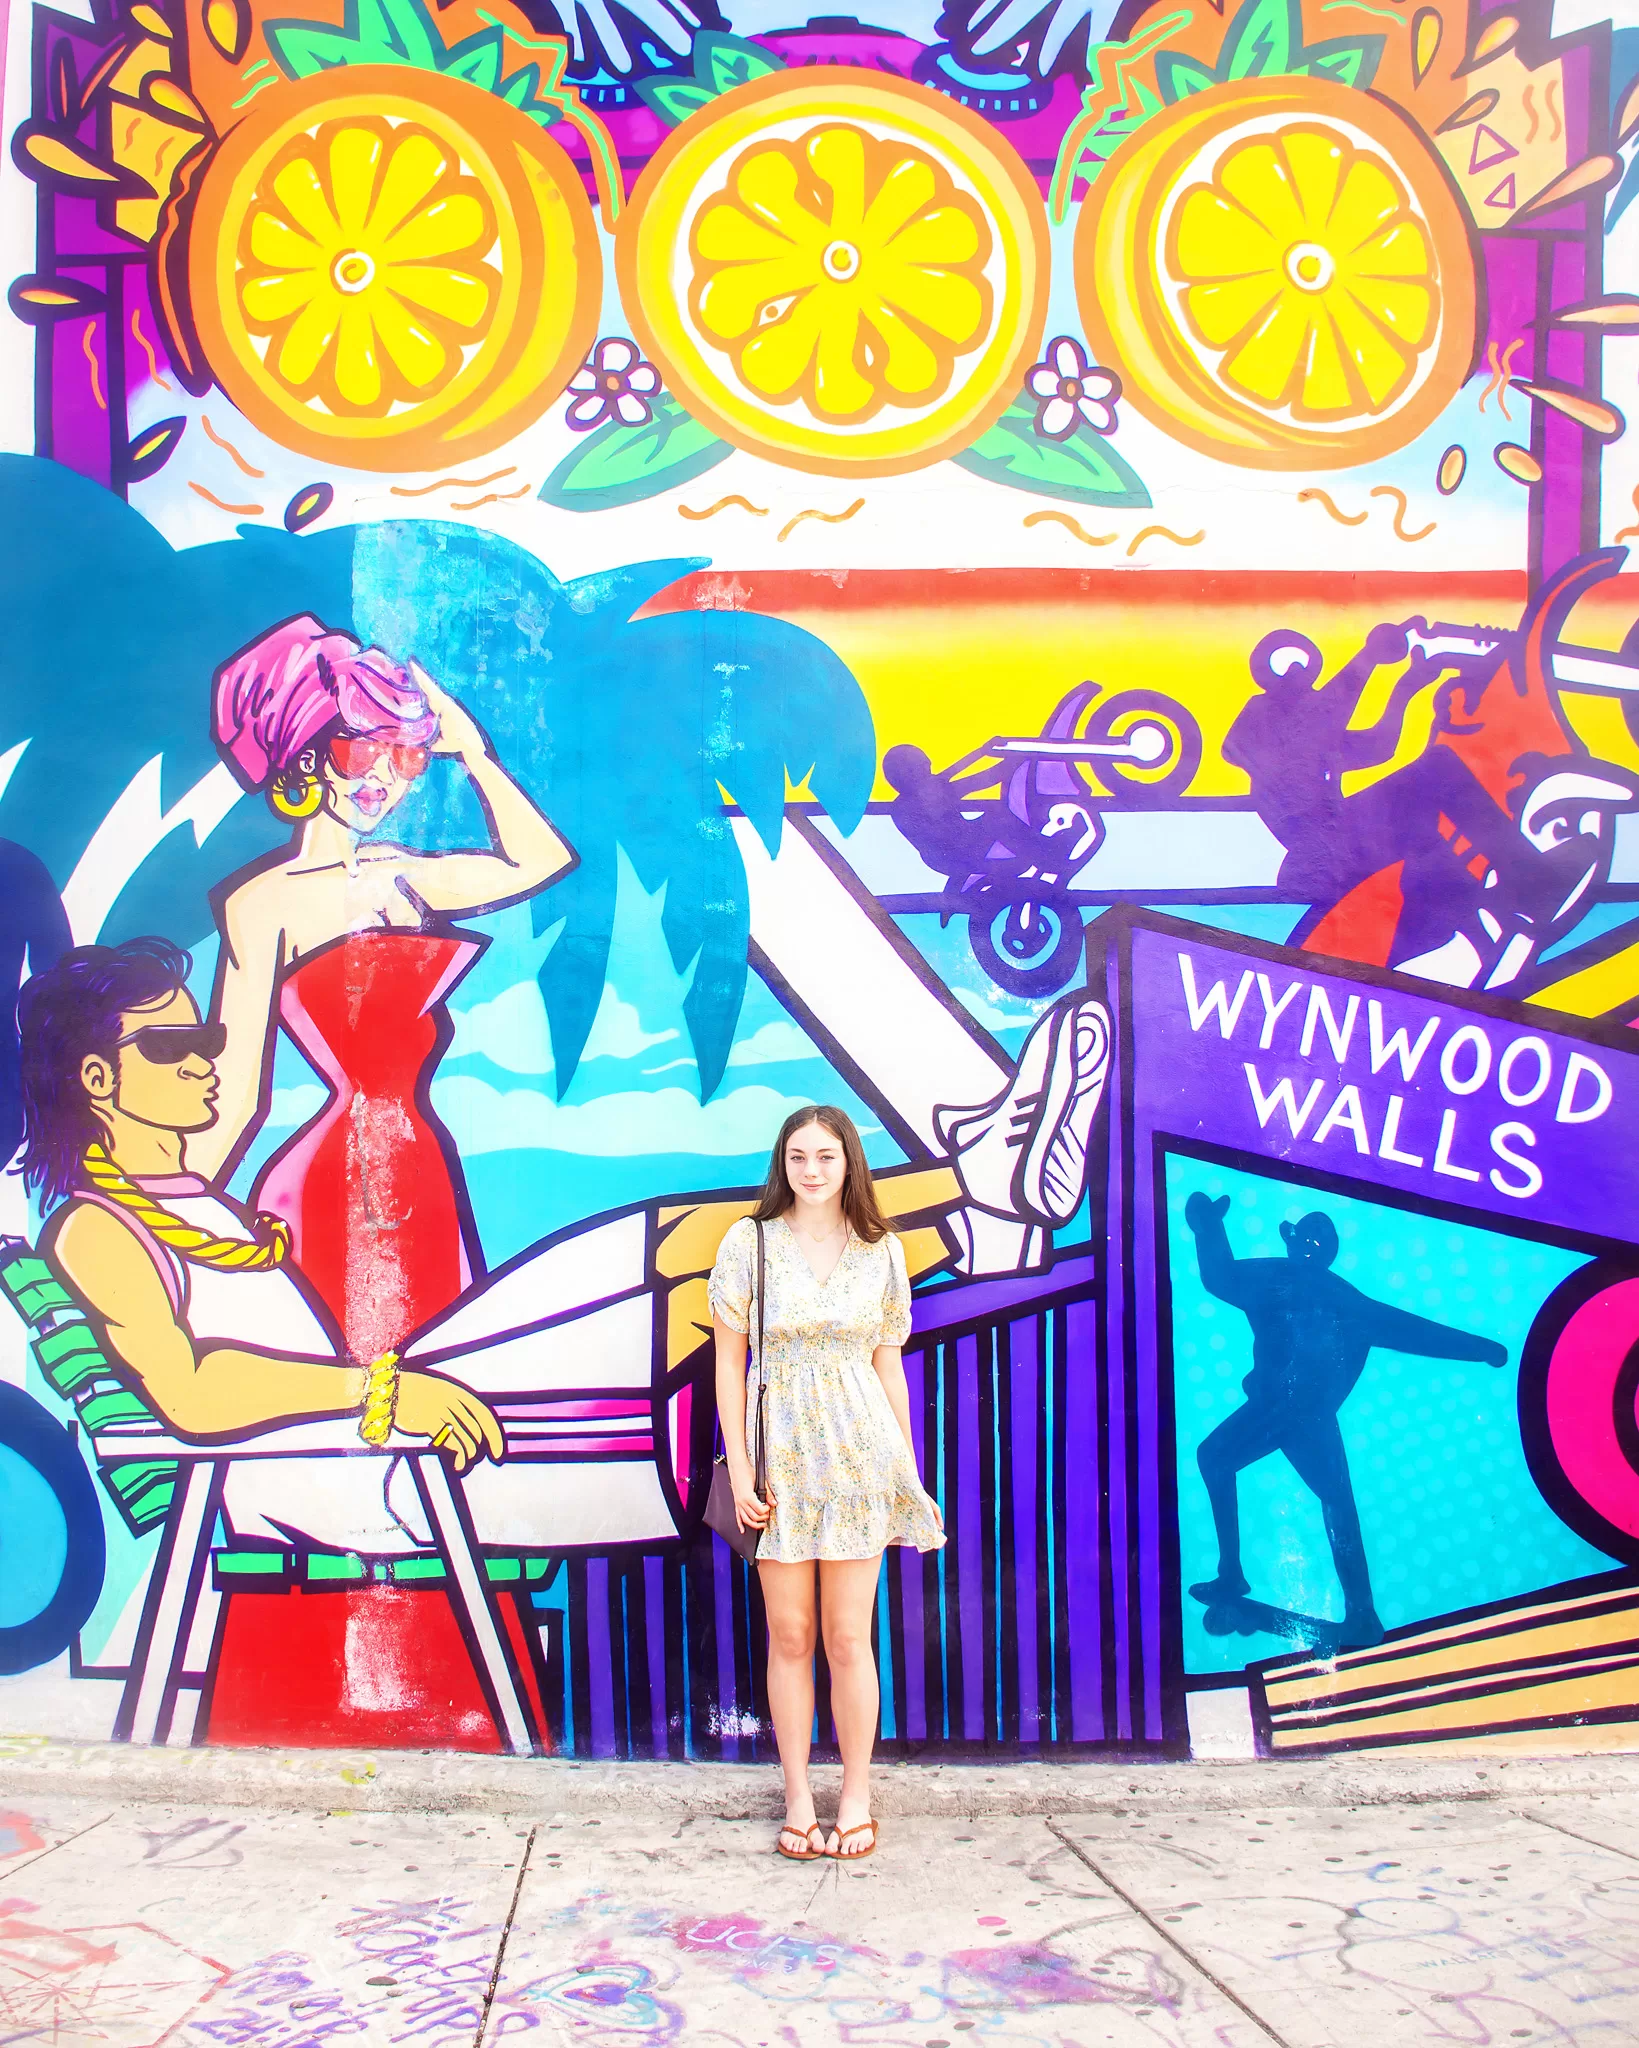 wynwood walls mural